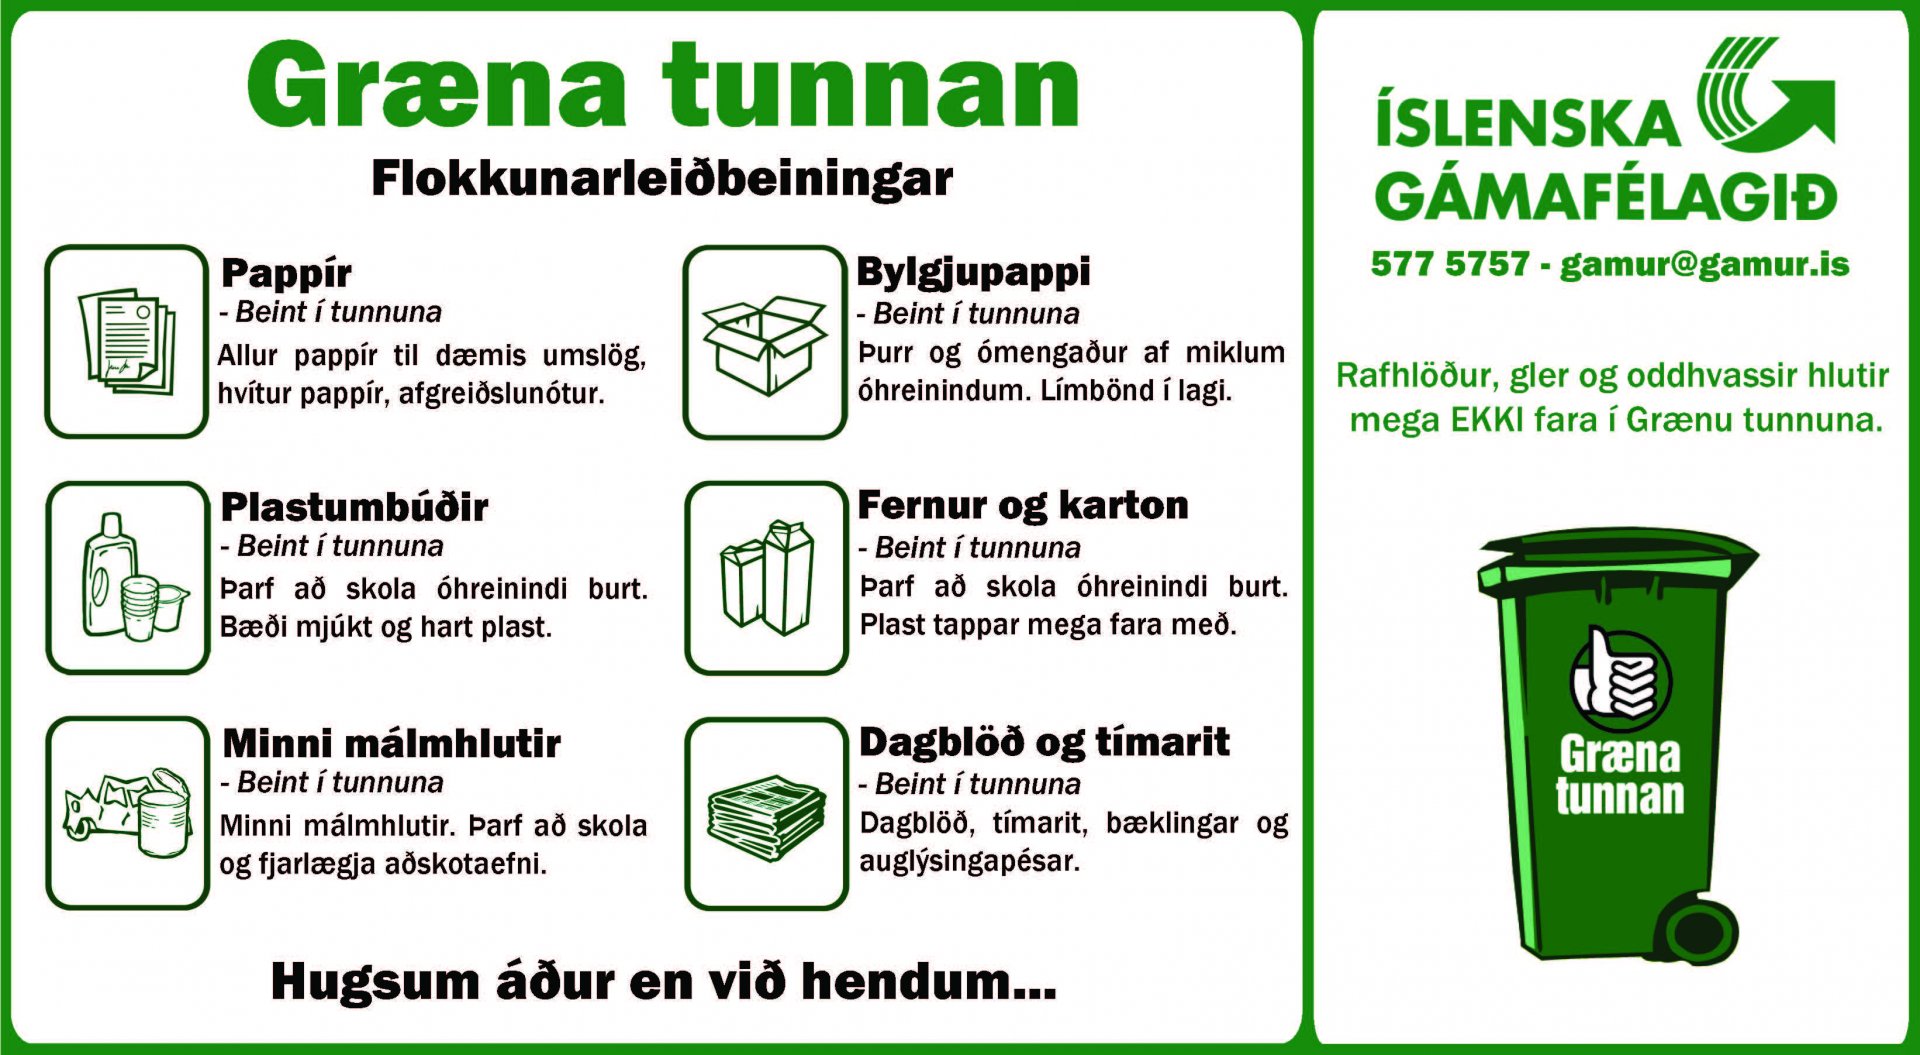 Featured image for “Flokkun í grænu tunnuna”